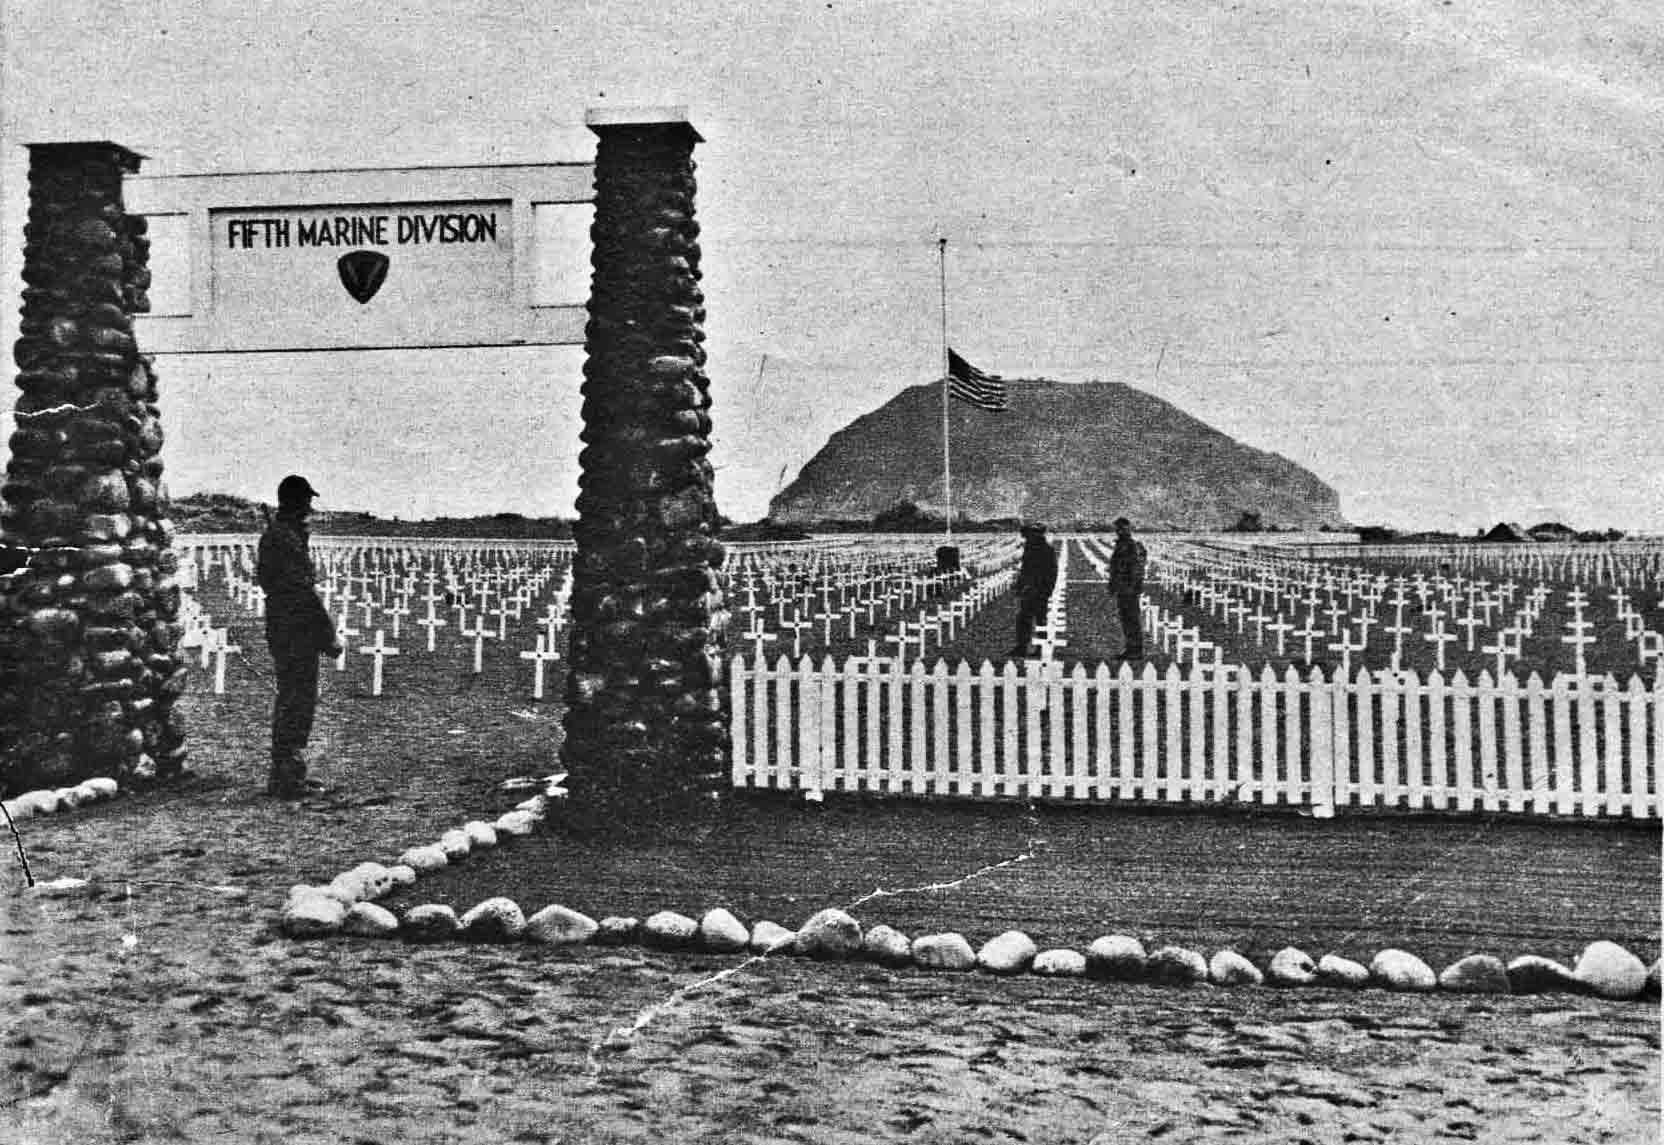 U.S. flag raised on Iwo Jima on February 23, 1945